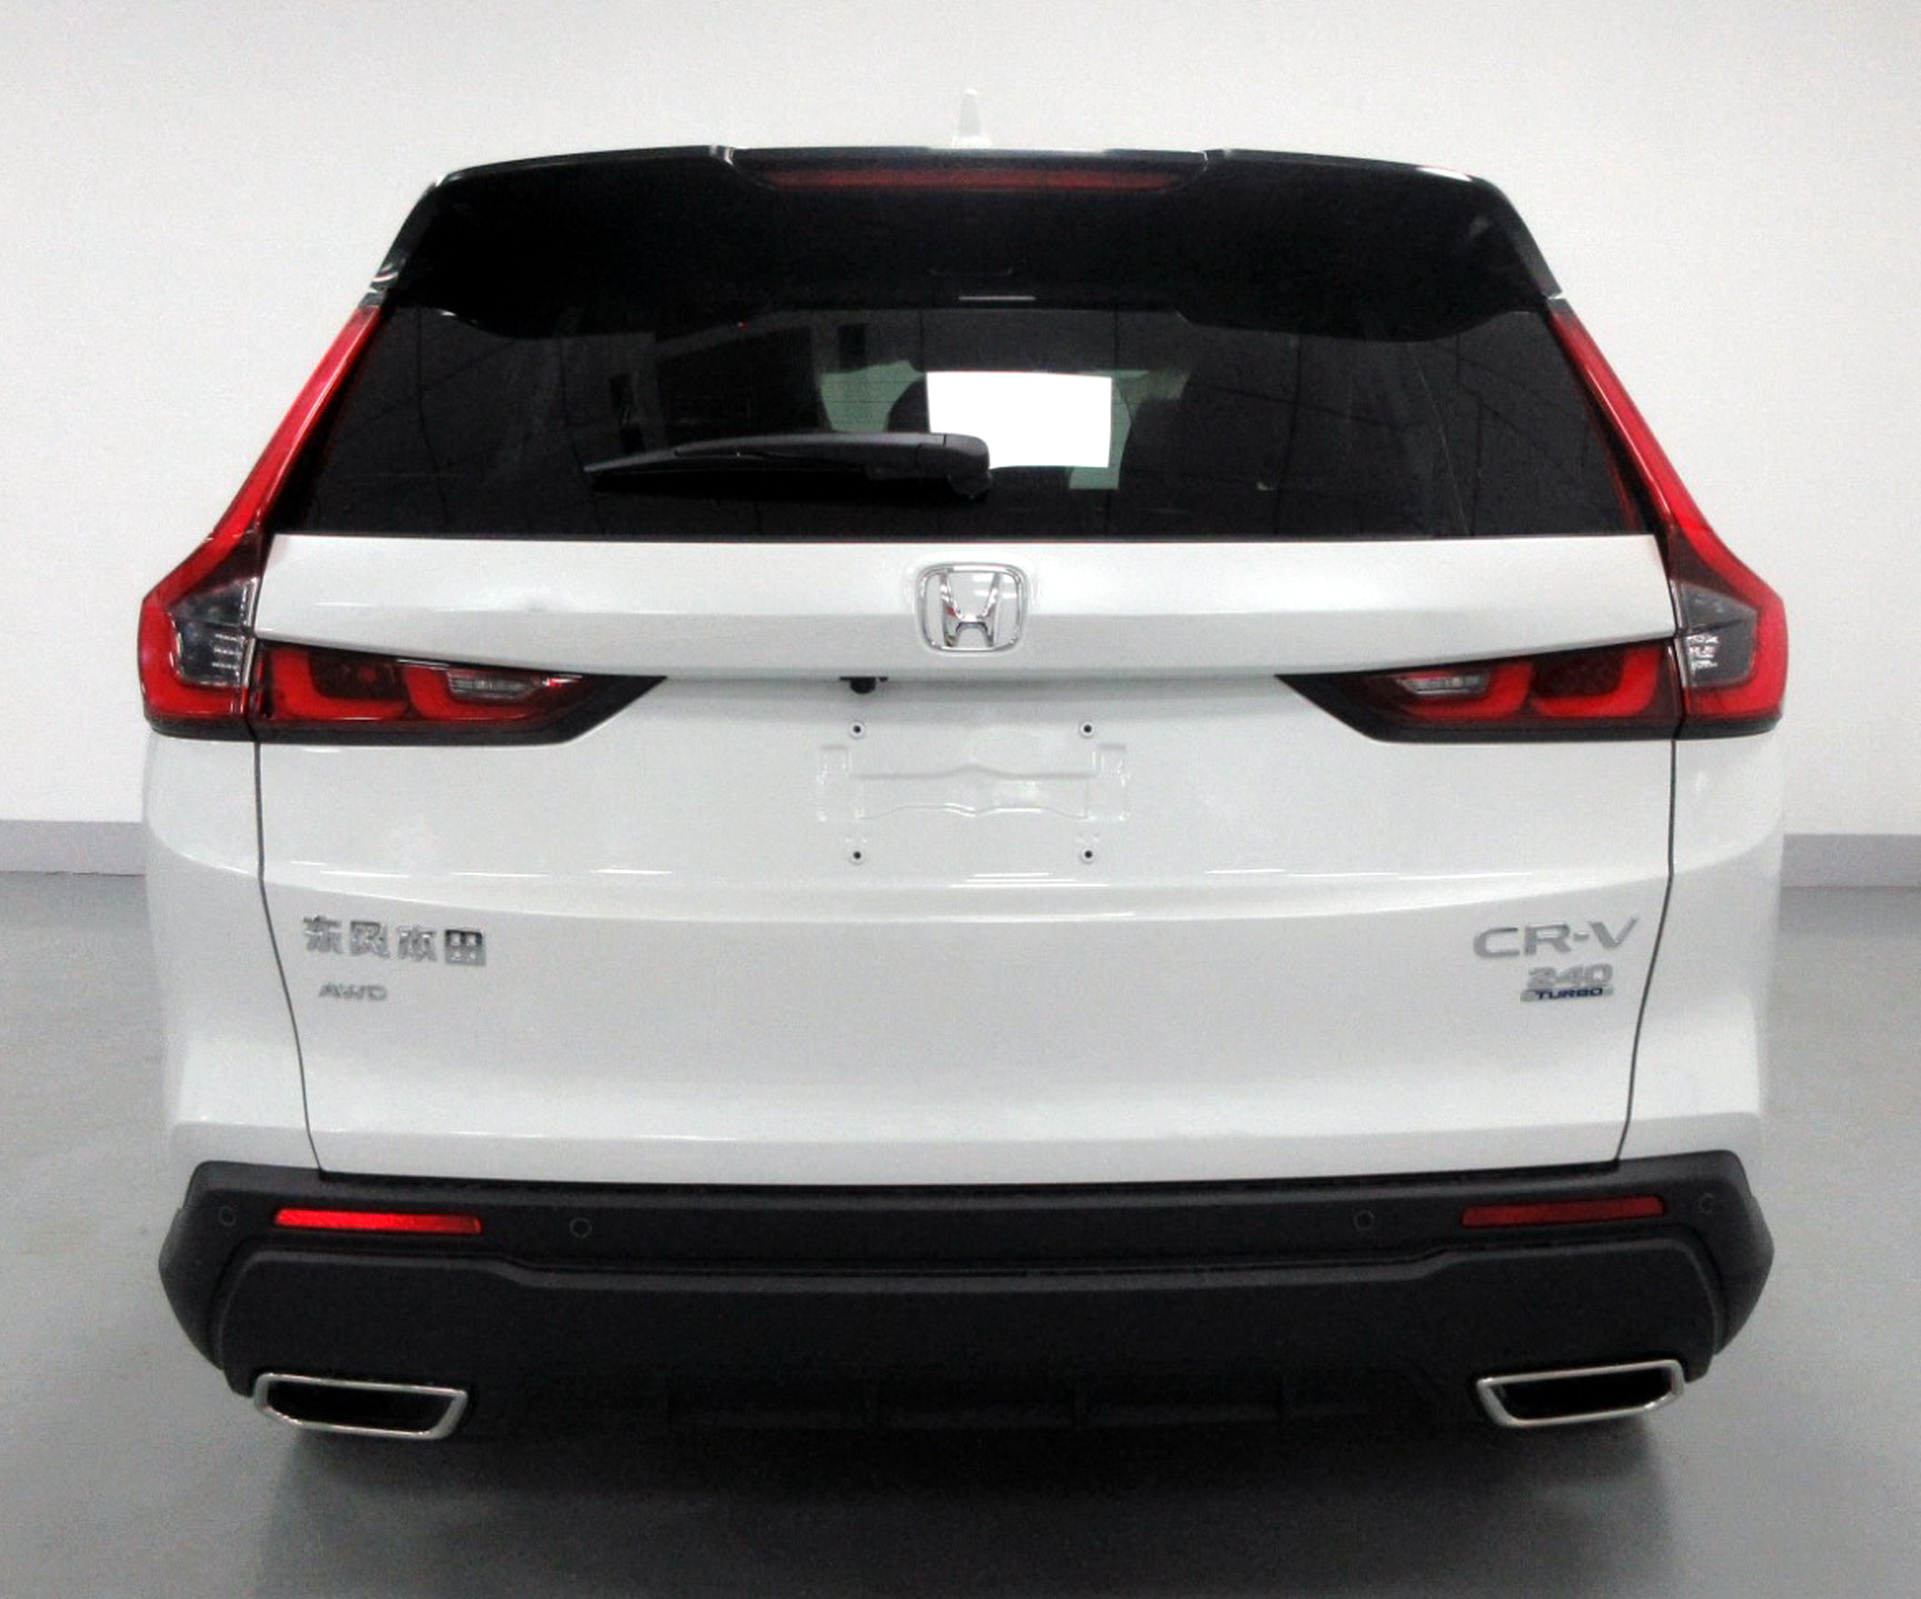 Fotos de homologação do Novo Honda CR-V